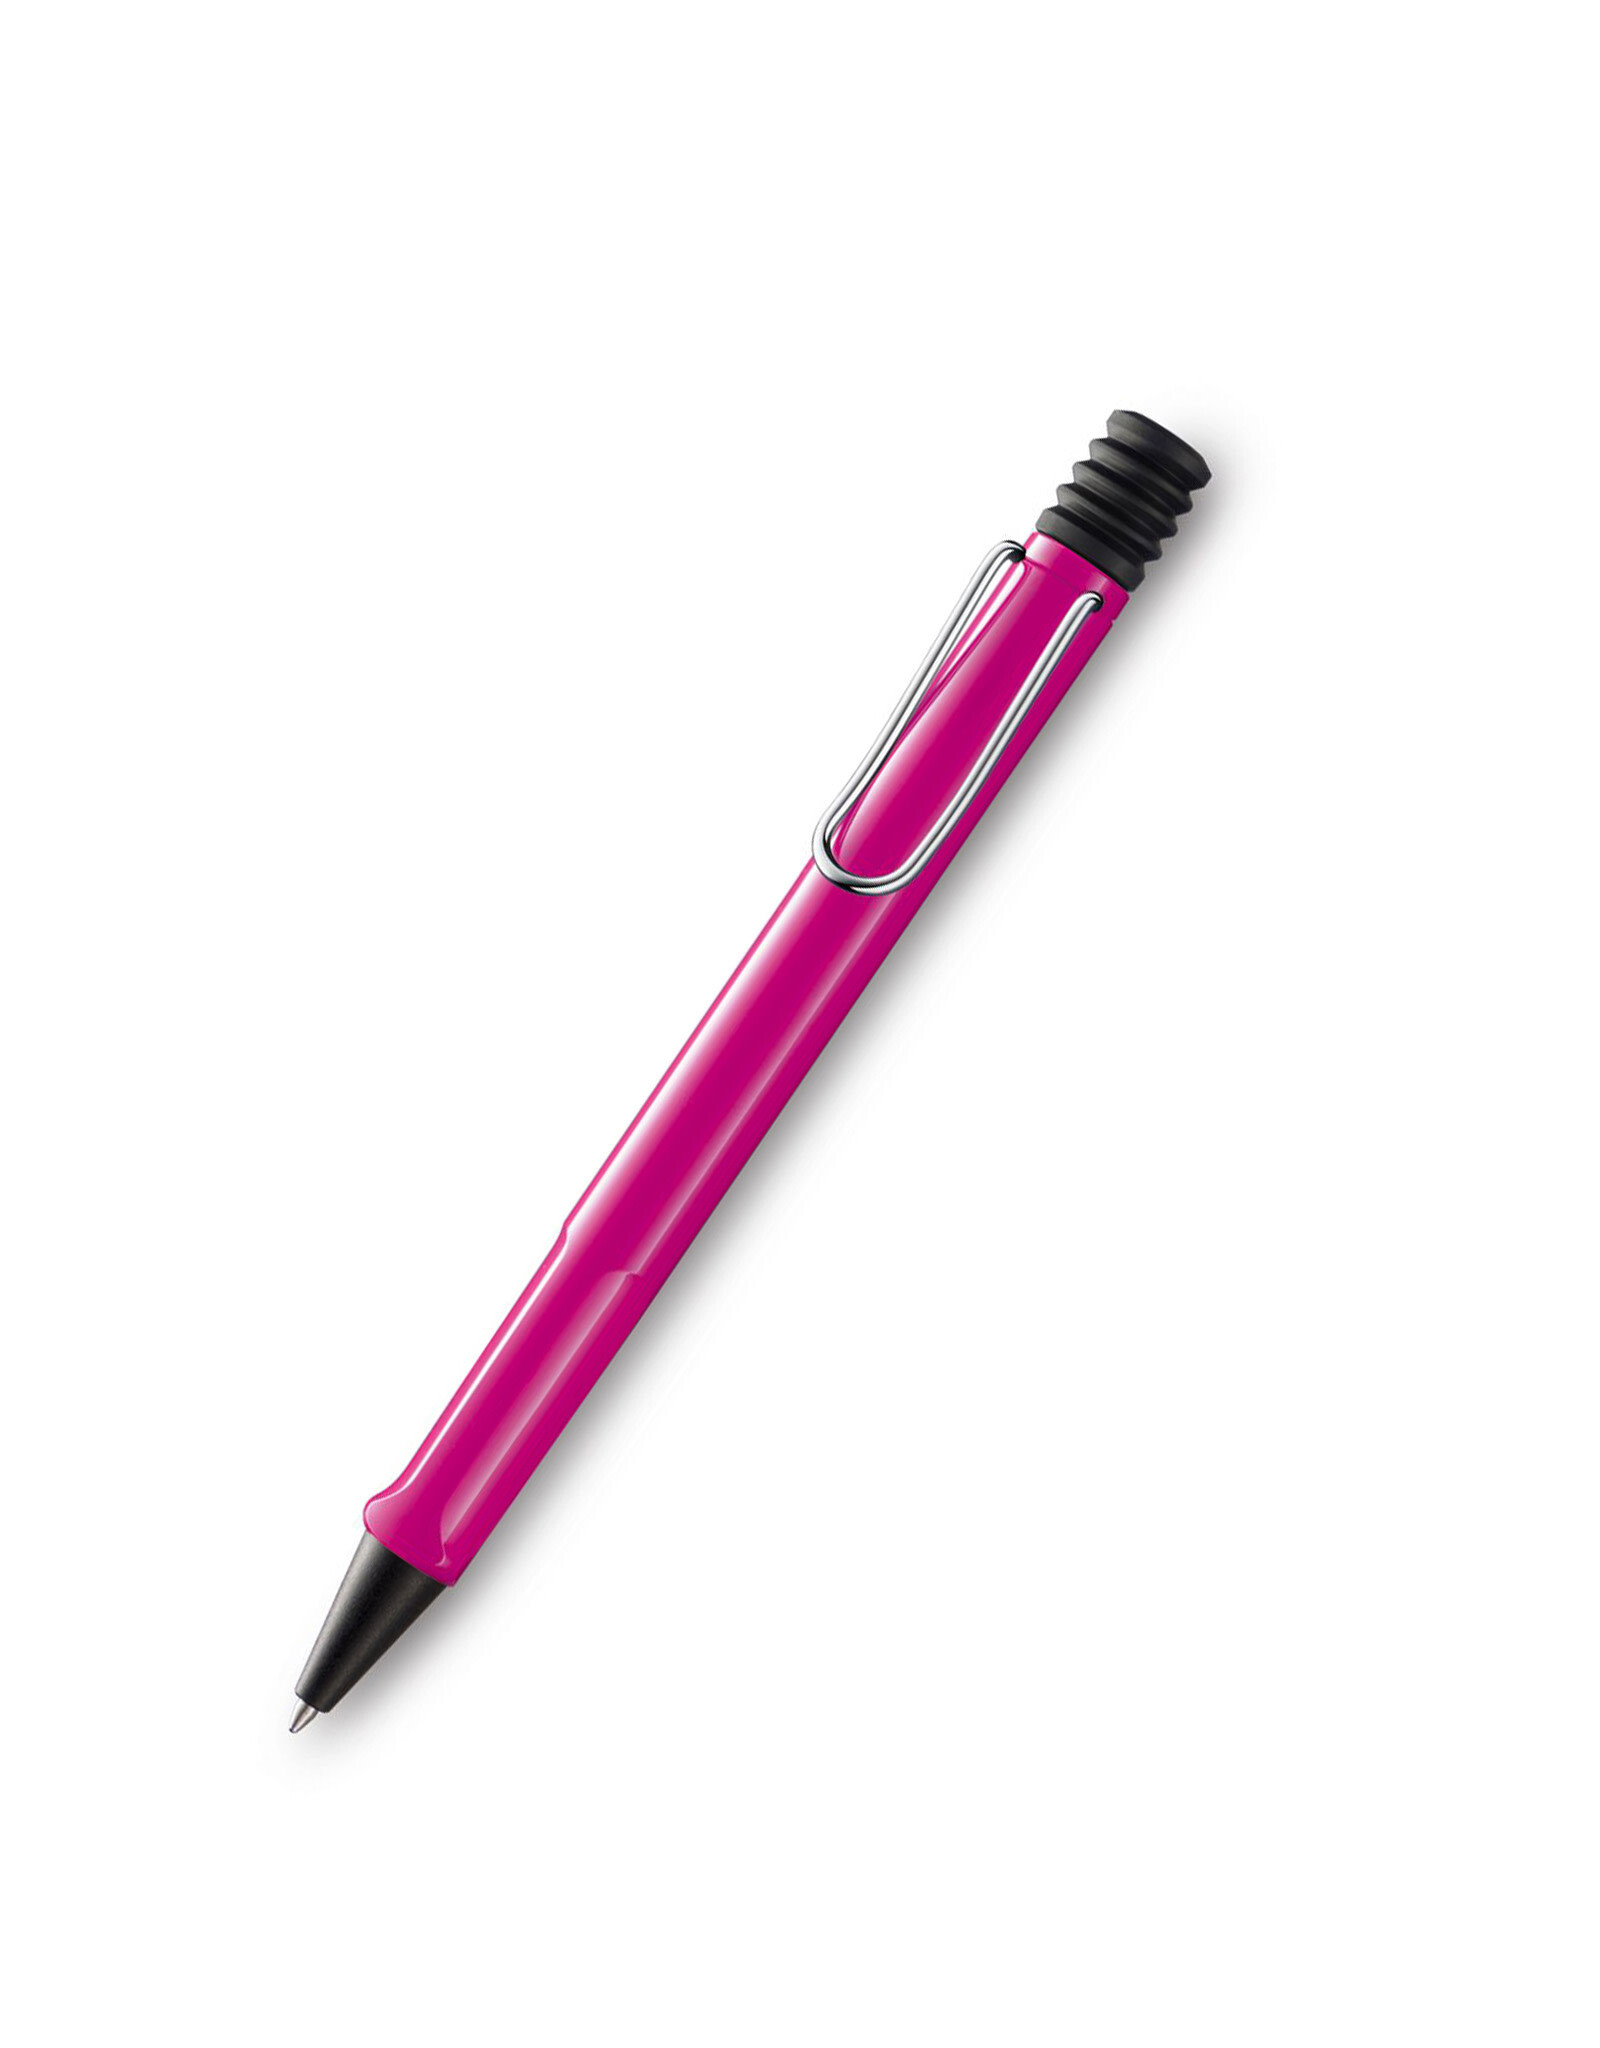 LAMY LAMY Safari Ballpoint Pen, Pink